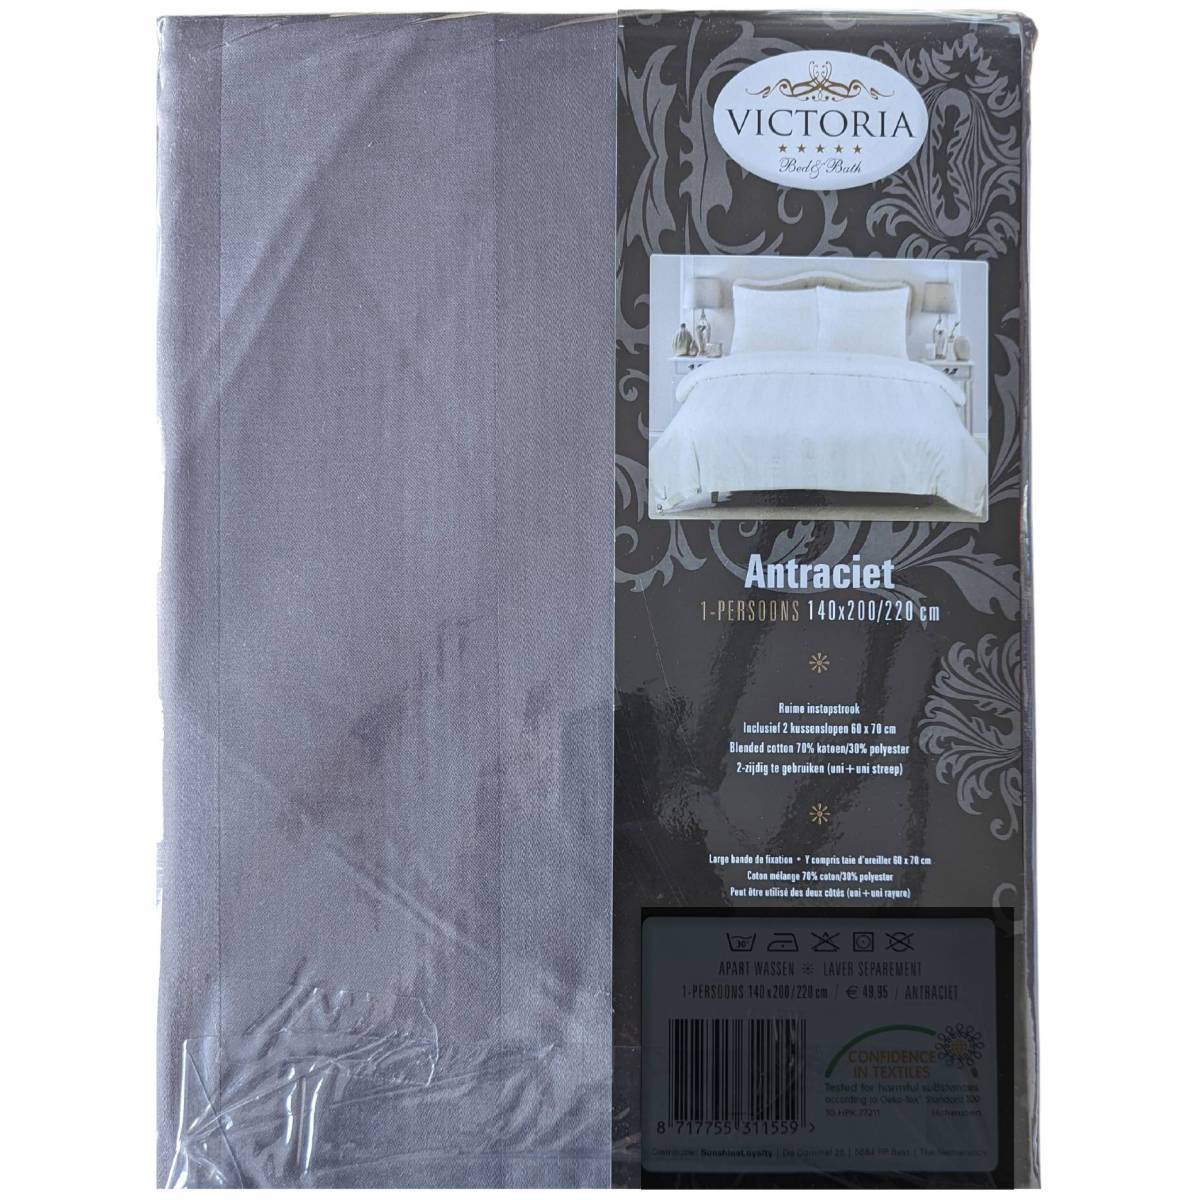 Duvet cover 140 x 200 cm Anthracite Victoria + Pillowcase